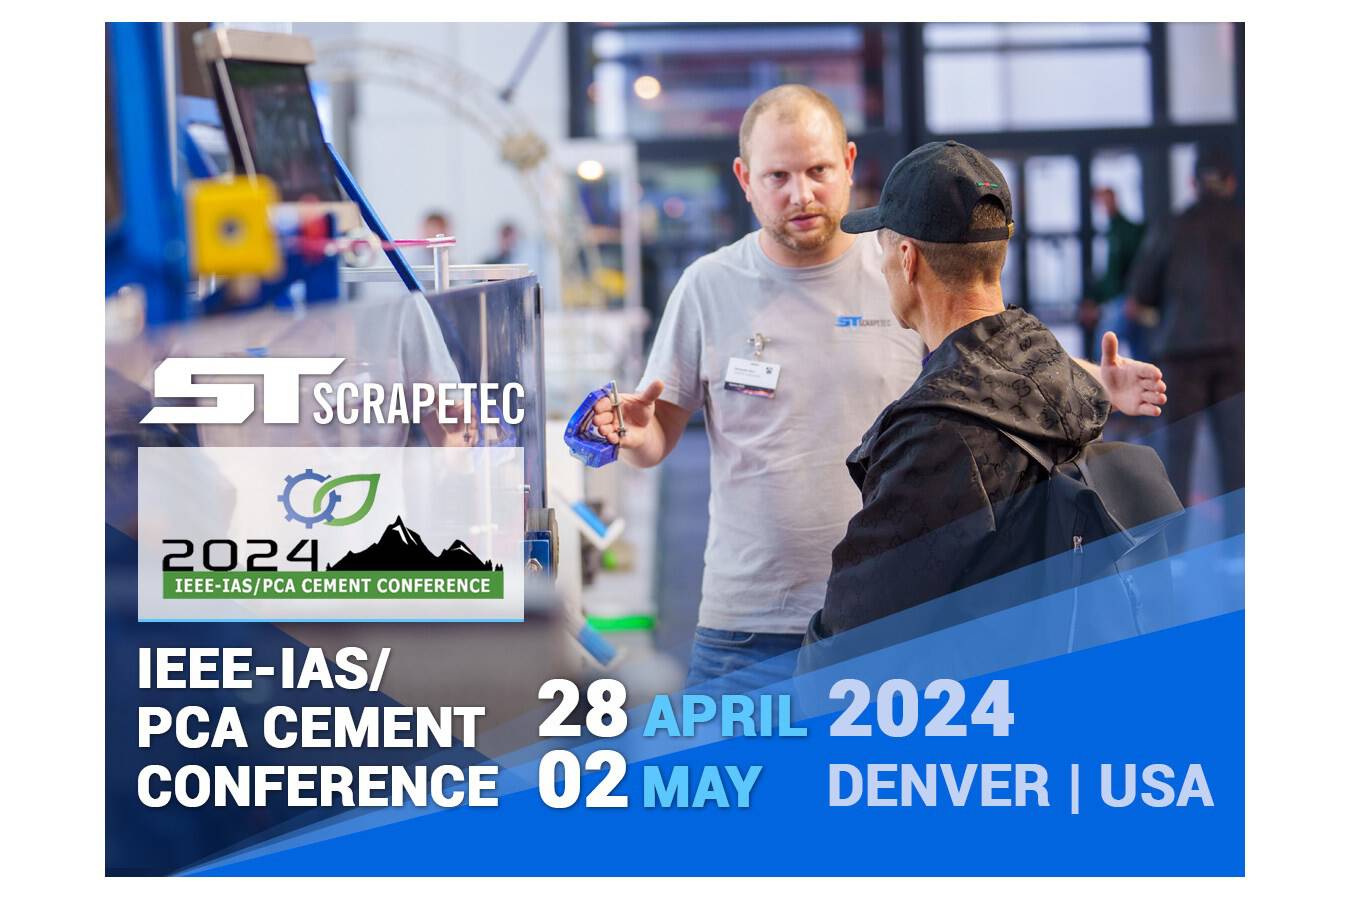 2024 IEEE-IAS/PCA Cement Conference mit Scrapetec an Bord Scrapetec lädt zur 2024 IEEE-IAS/PCA Cement Conference in Denver ein, um ihre innovative Staubreduktionsmethode DustScrape vorzustellen, die Wartung und Energieverbrauch senkt.